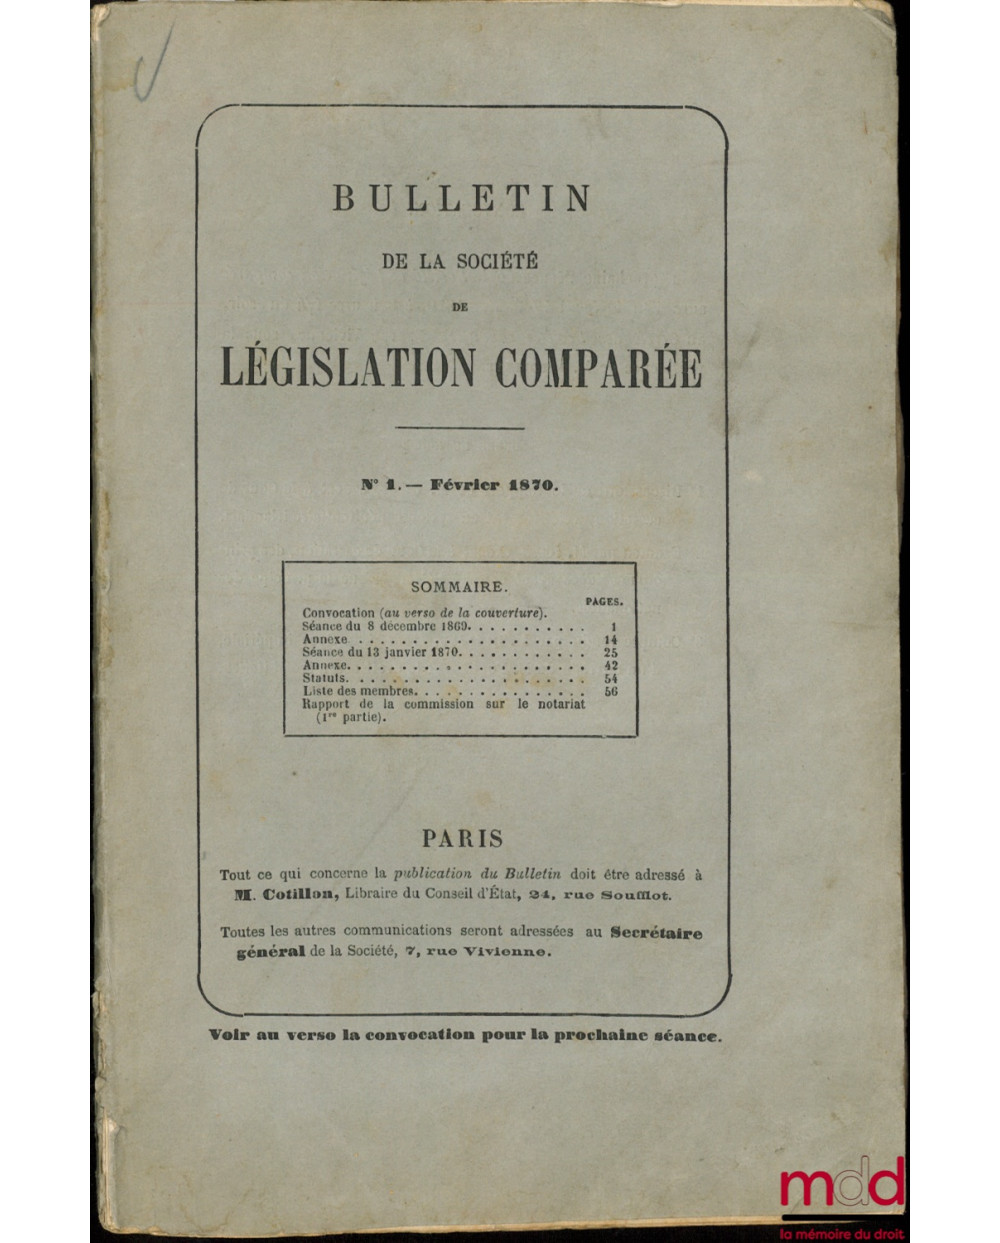 BULLETIN DE LA SOCIÉTÉ DE LÉGISLATION COMPARÉE, n° 1 à 4, (février à juillet 1870)